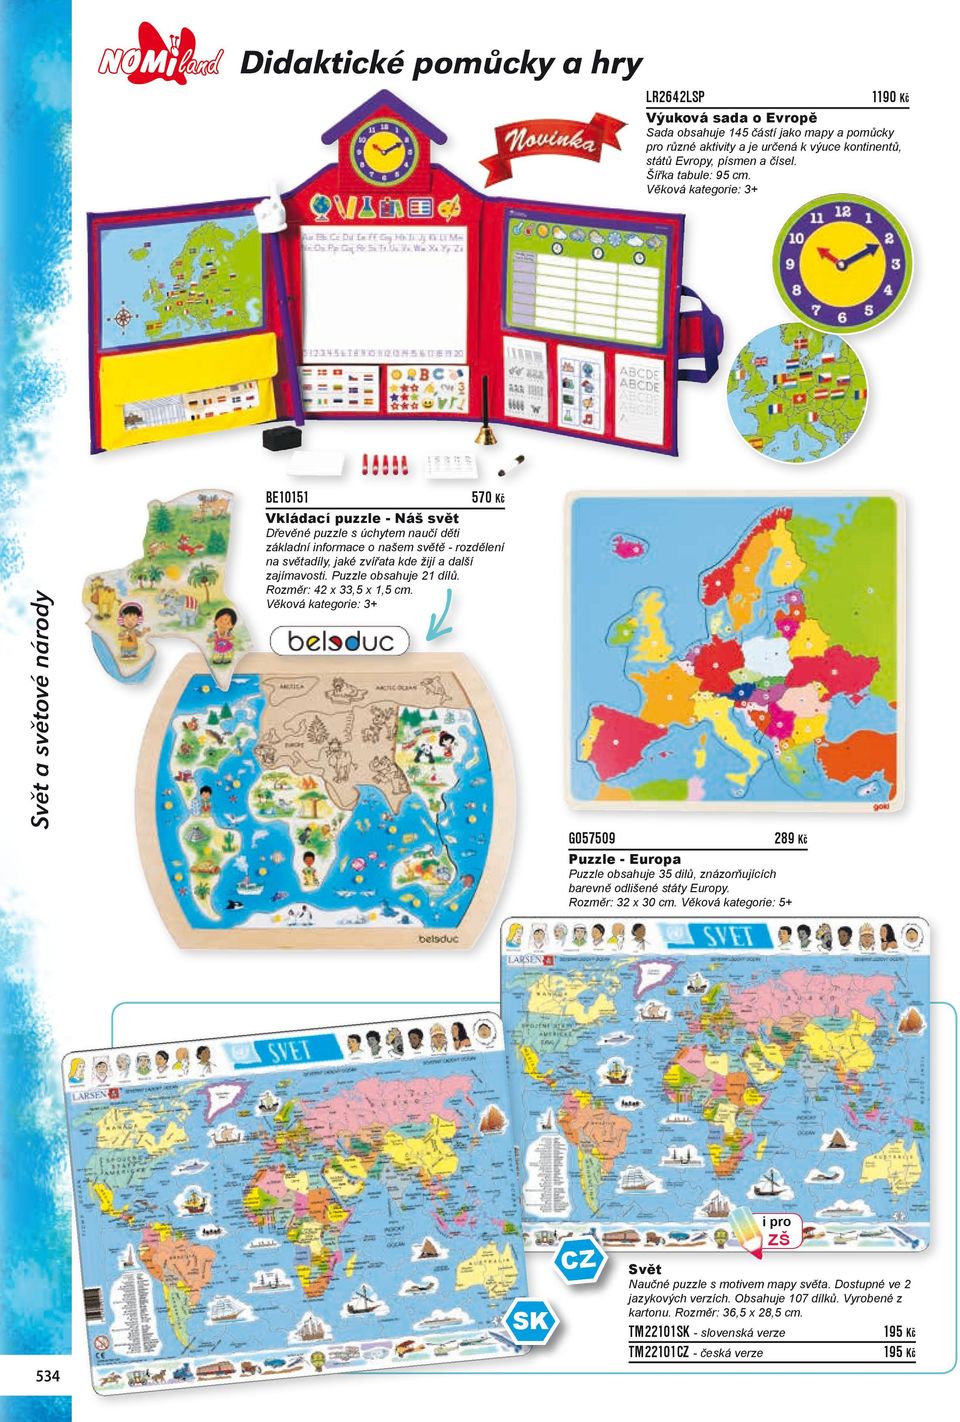 Svět a světové národy BE10151 570 Kč Vkládací puzzle - Náš svět Dřevěné puzzle s úchytem naučí děti základní informace o našem světě - rozdělení na světadíly, jaké zvířata kde žijí a další